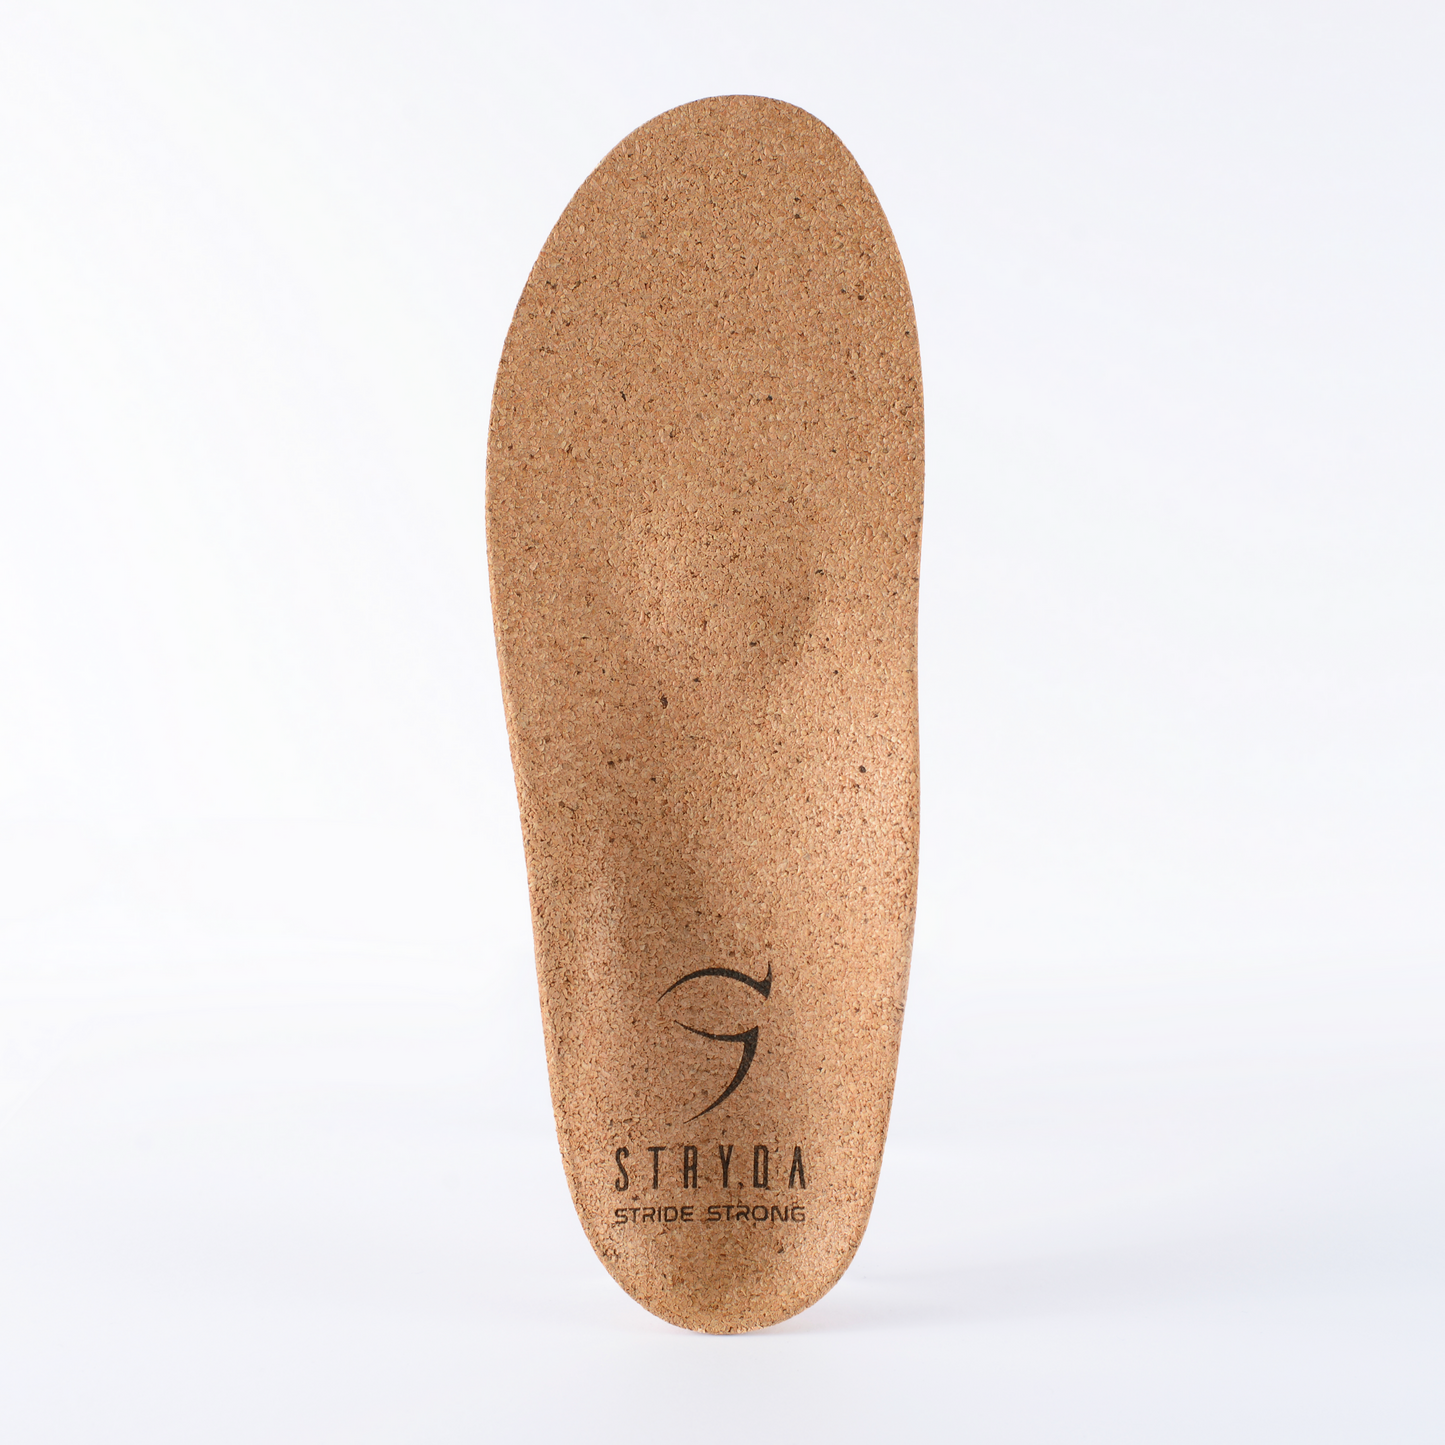 STRYDA Soles Comfort Cork Insoles